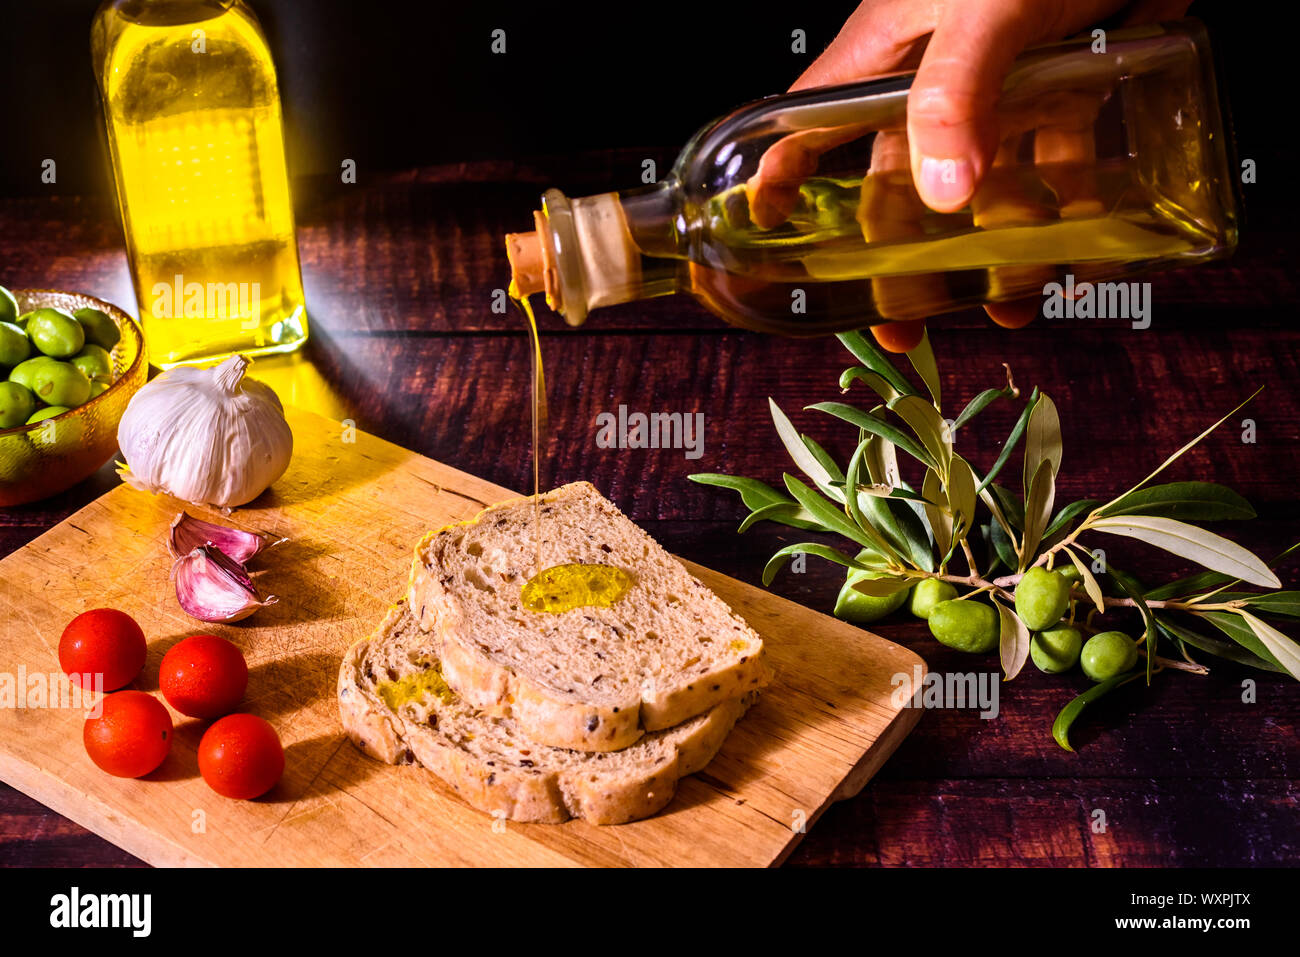 Ein mediterranes Kochen bereitet eine Scheibe Brot mit Olivenöl, Tomaten und Knoblauch, einem traditionellen Frühstück im mediterranen Ländern. Stockfoto